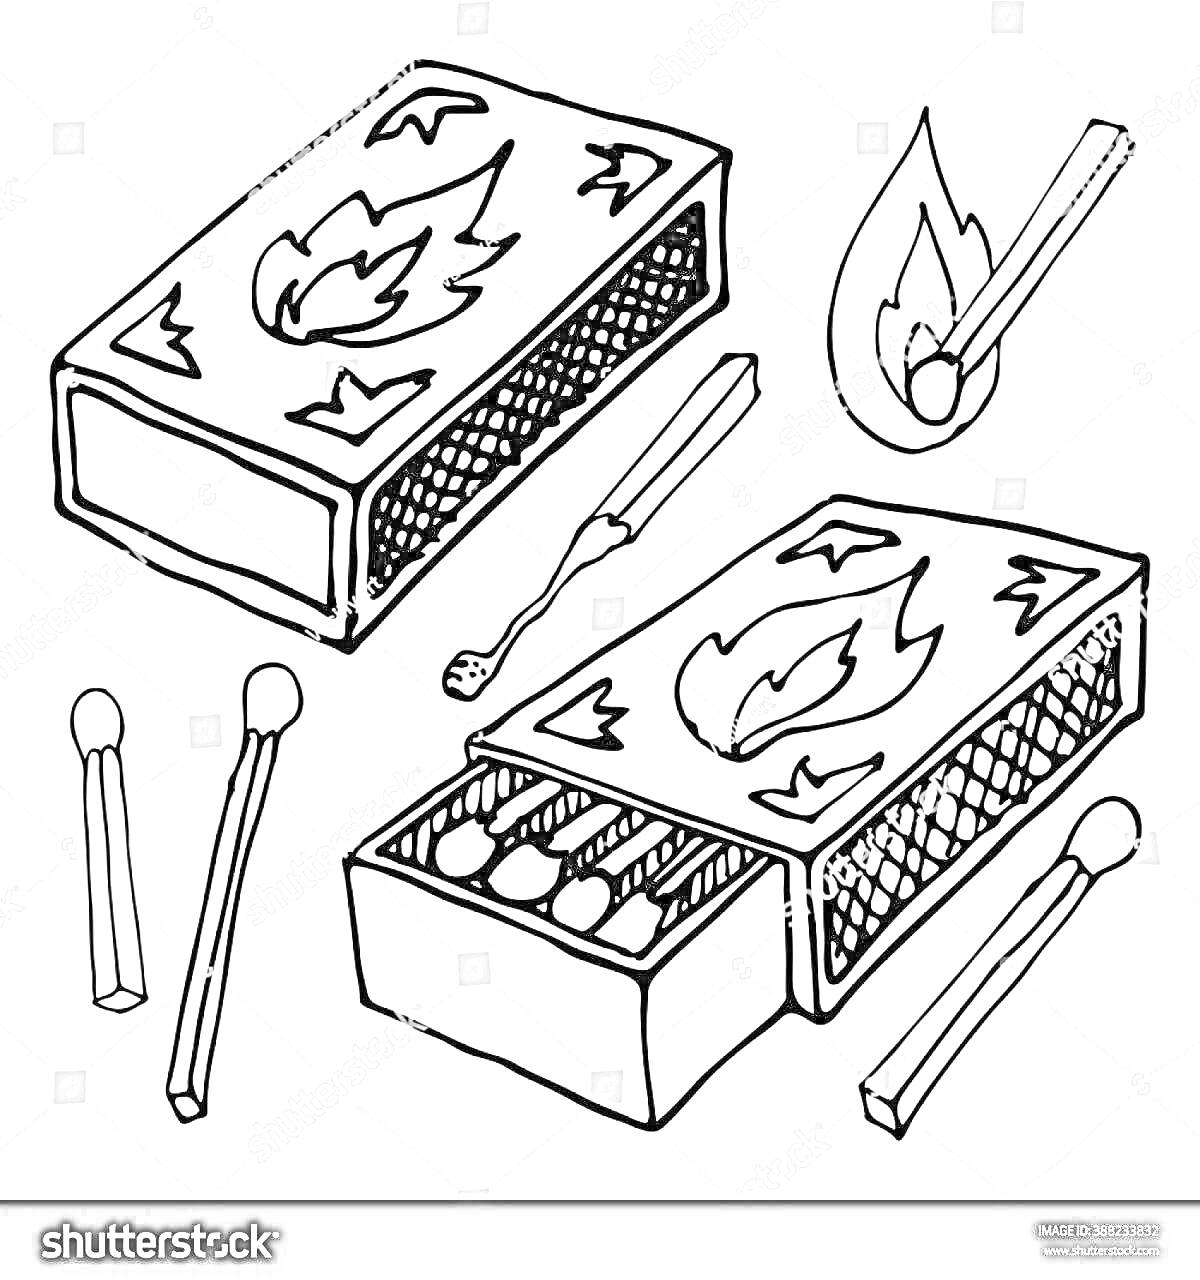 Раскраска Коробок спичек с изображением огня, спички внутри коробка и отдельно, горящая спичка